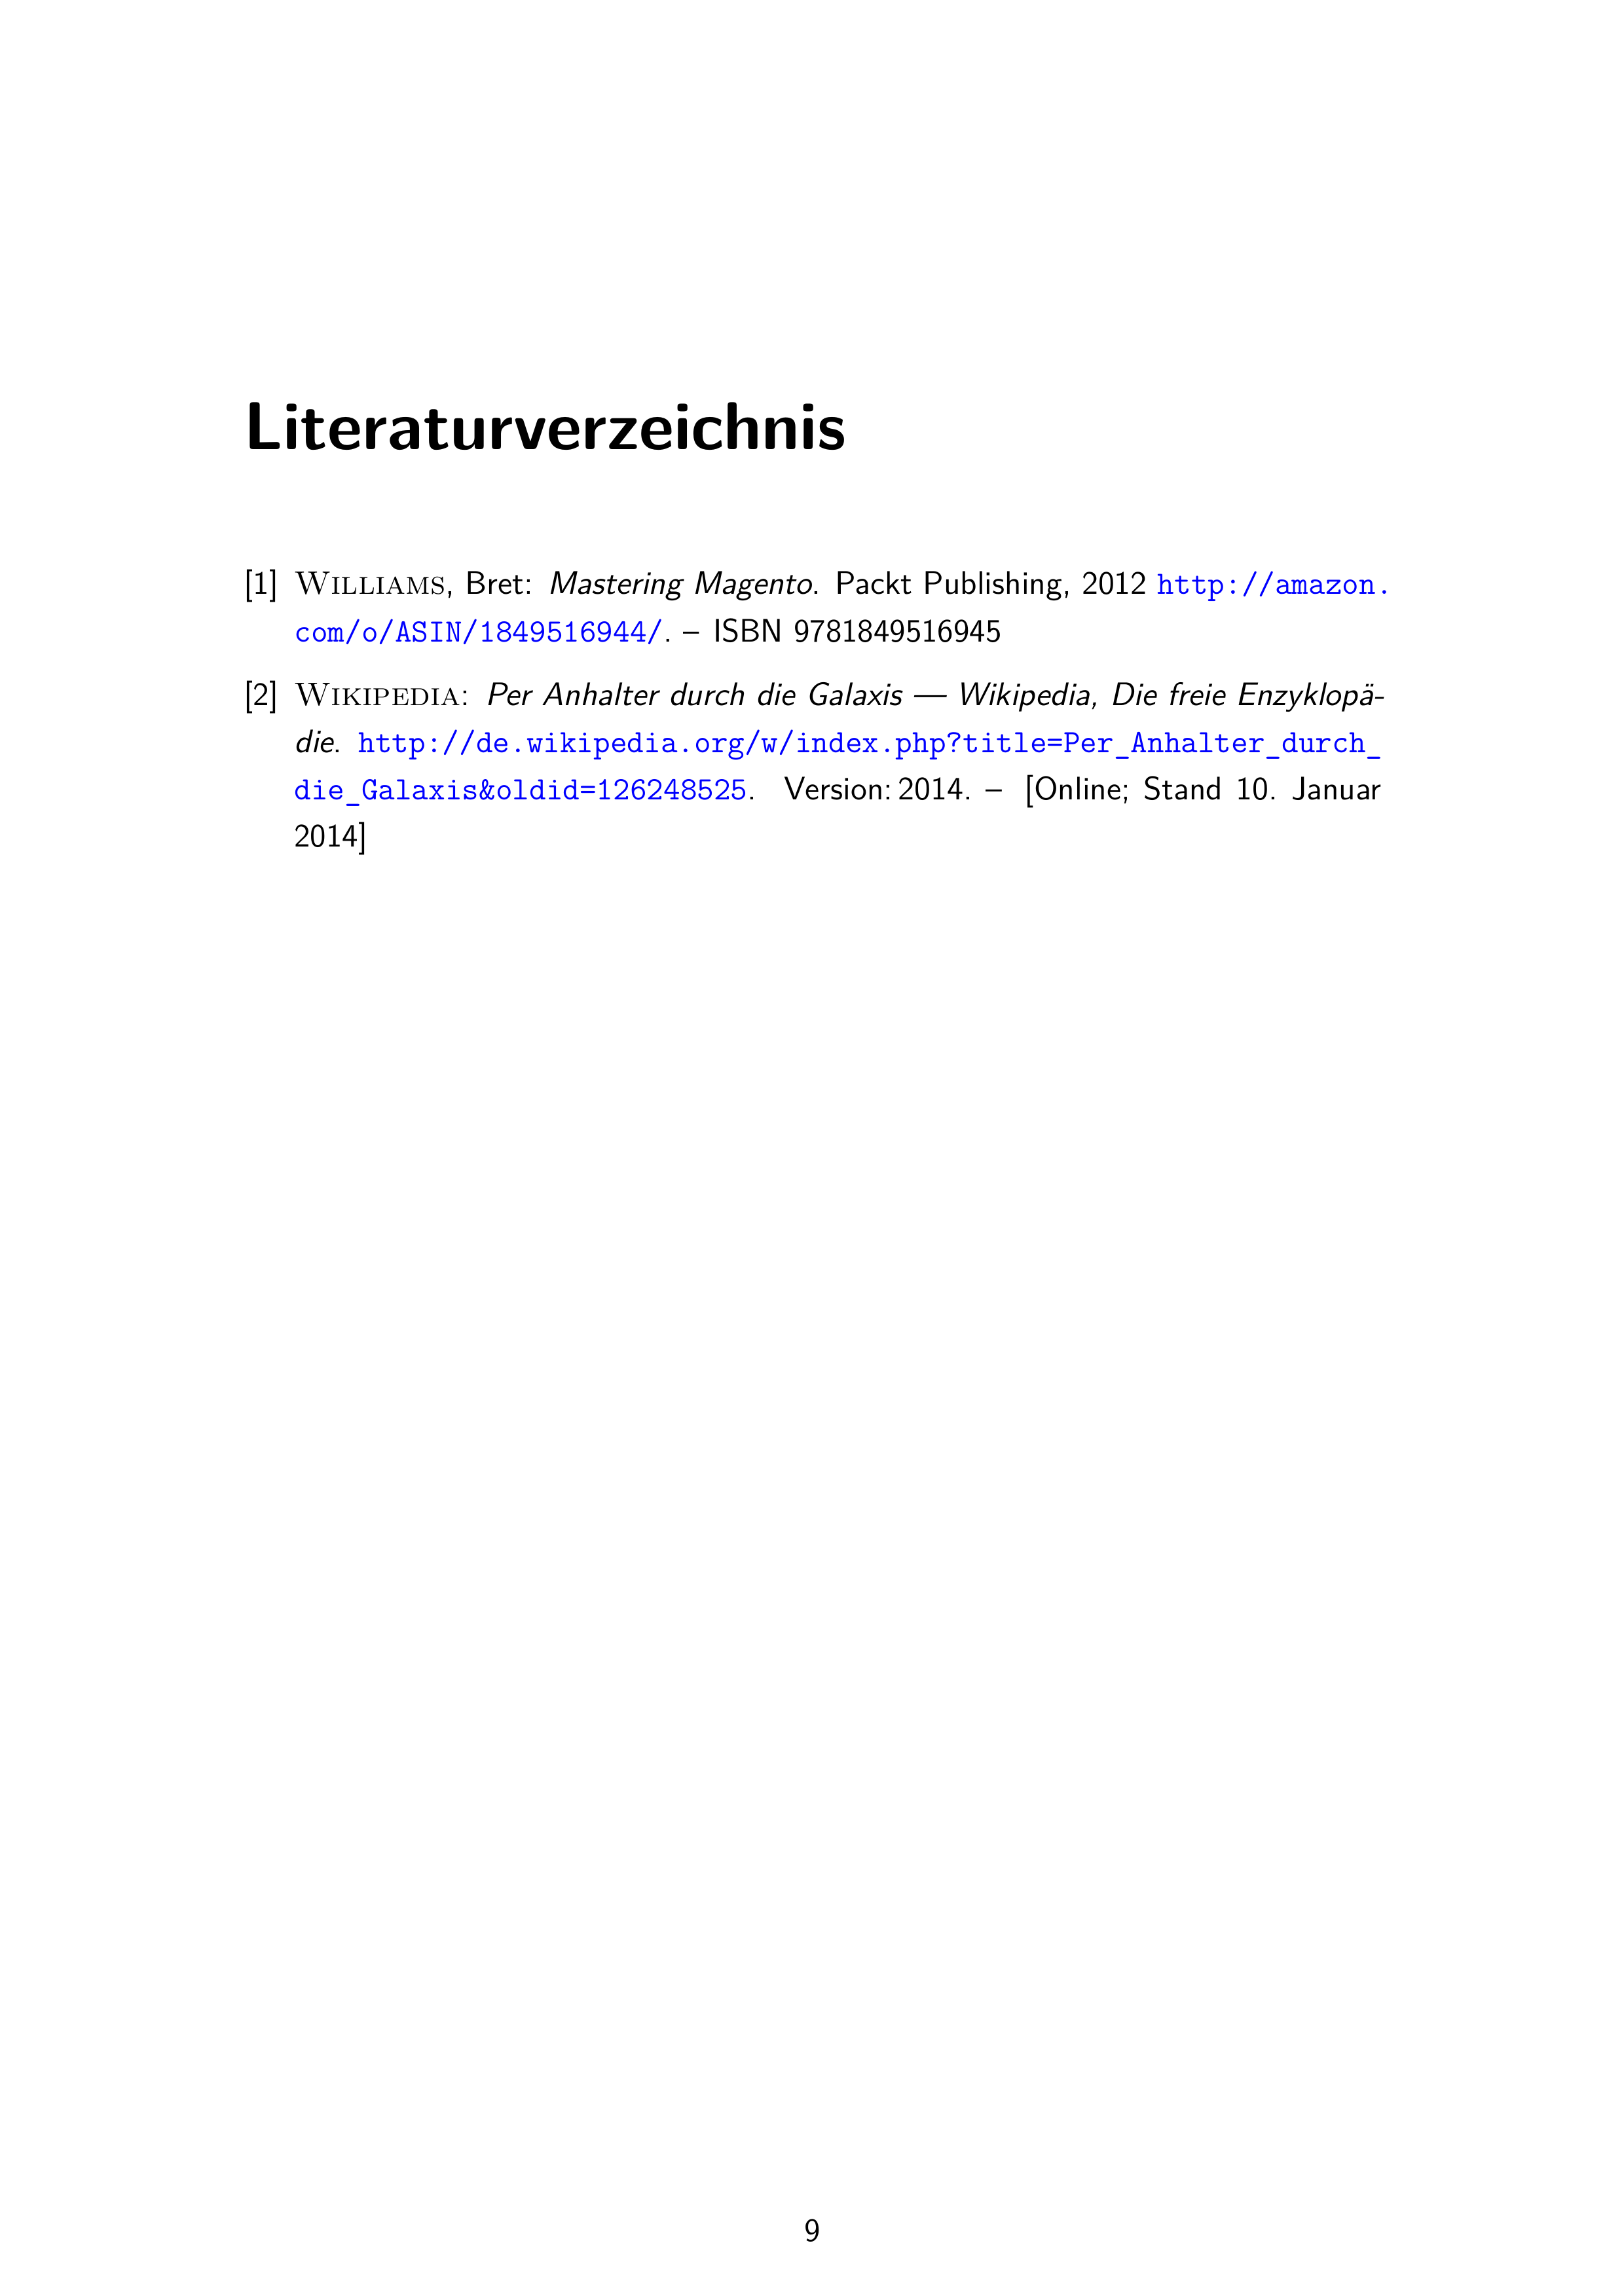 Das Literaturverzeichnis der BA nach DIN 1505-2